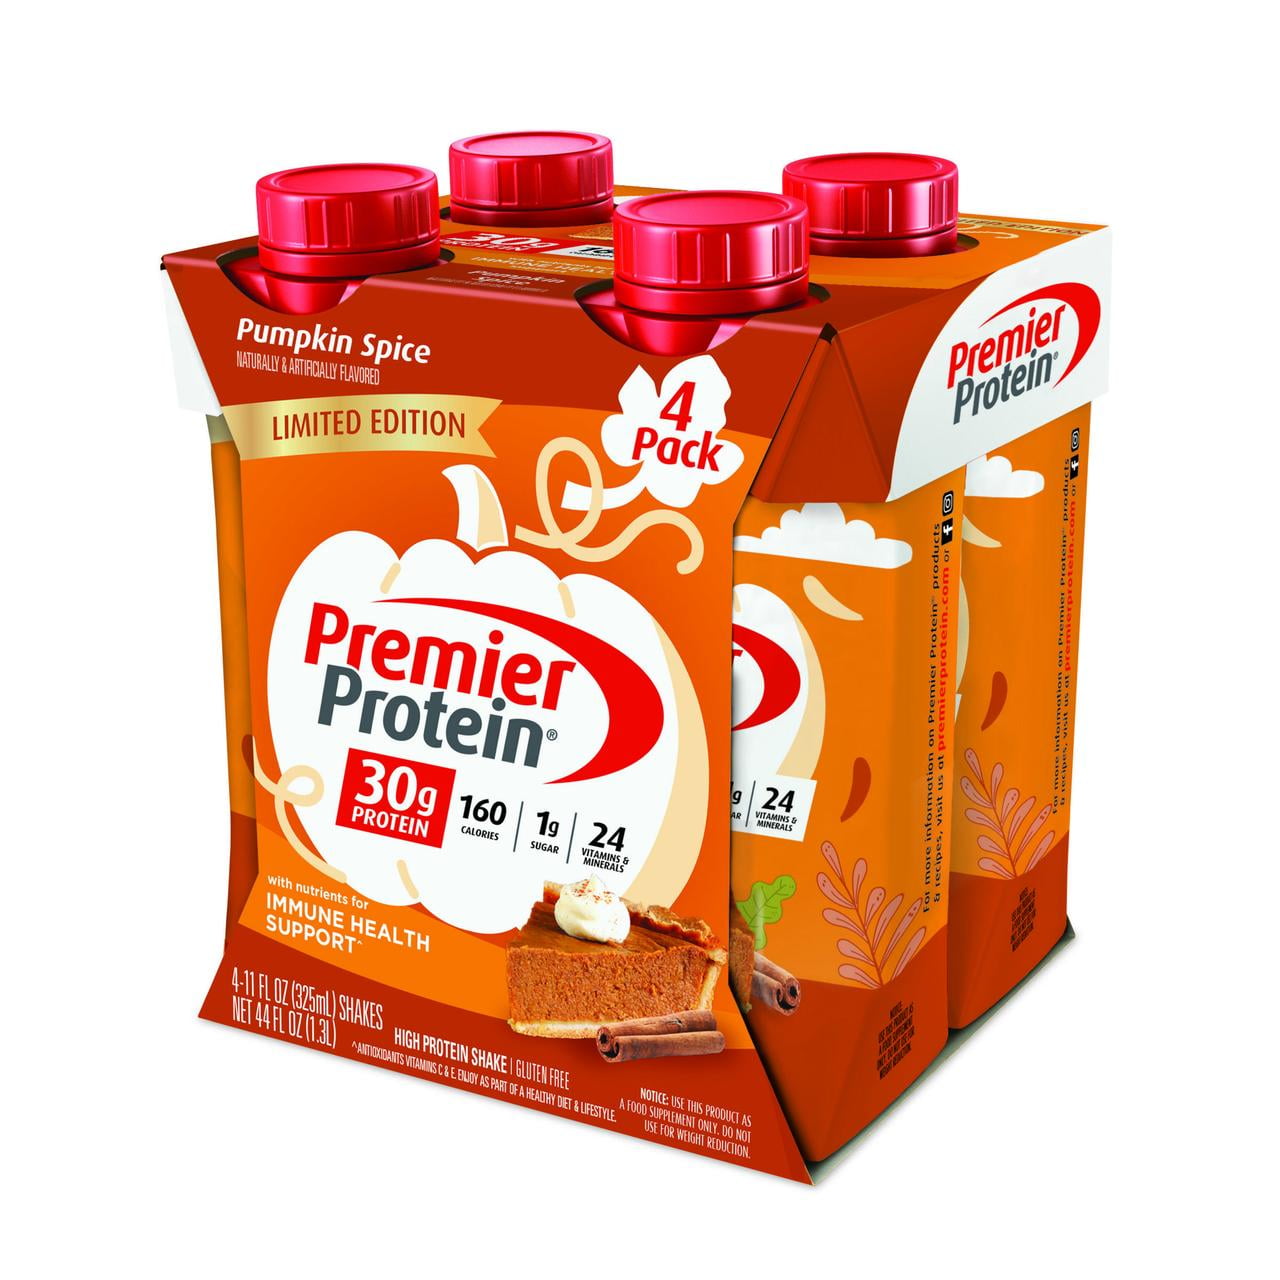 Premier Protein Shake, Pumpkin Spice Limited Time, 30g Protein, 11 Fl Oz, 4 Ct